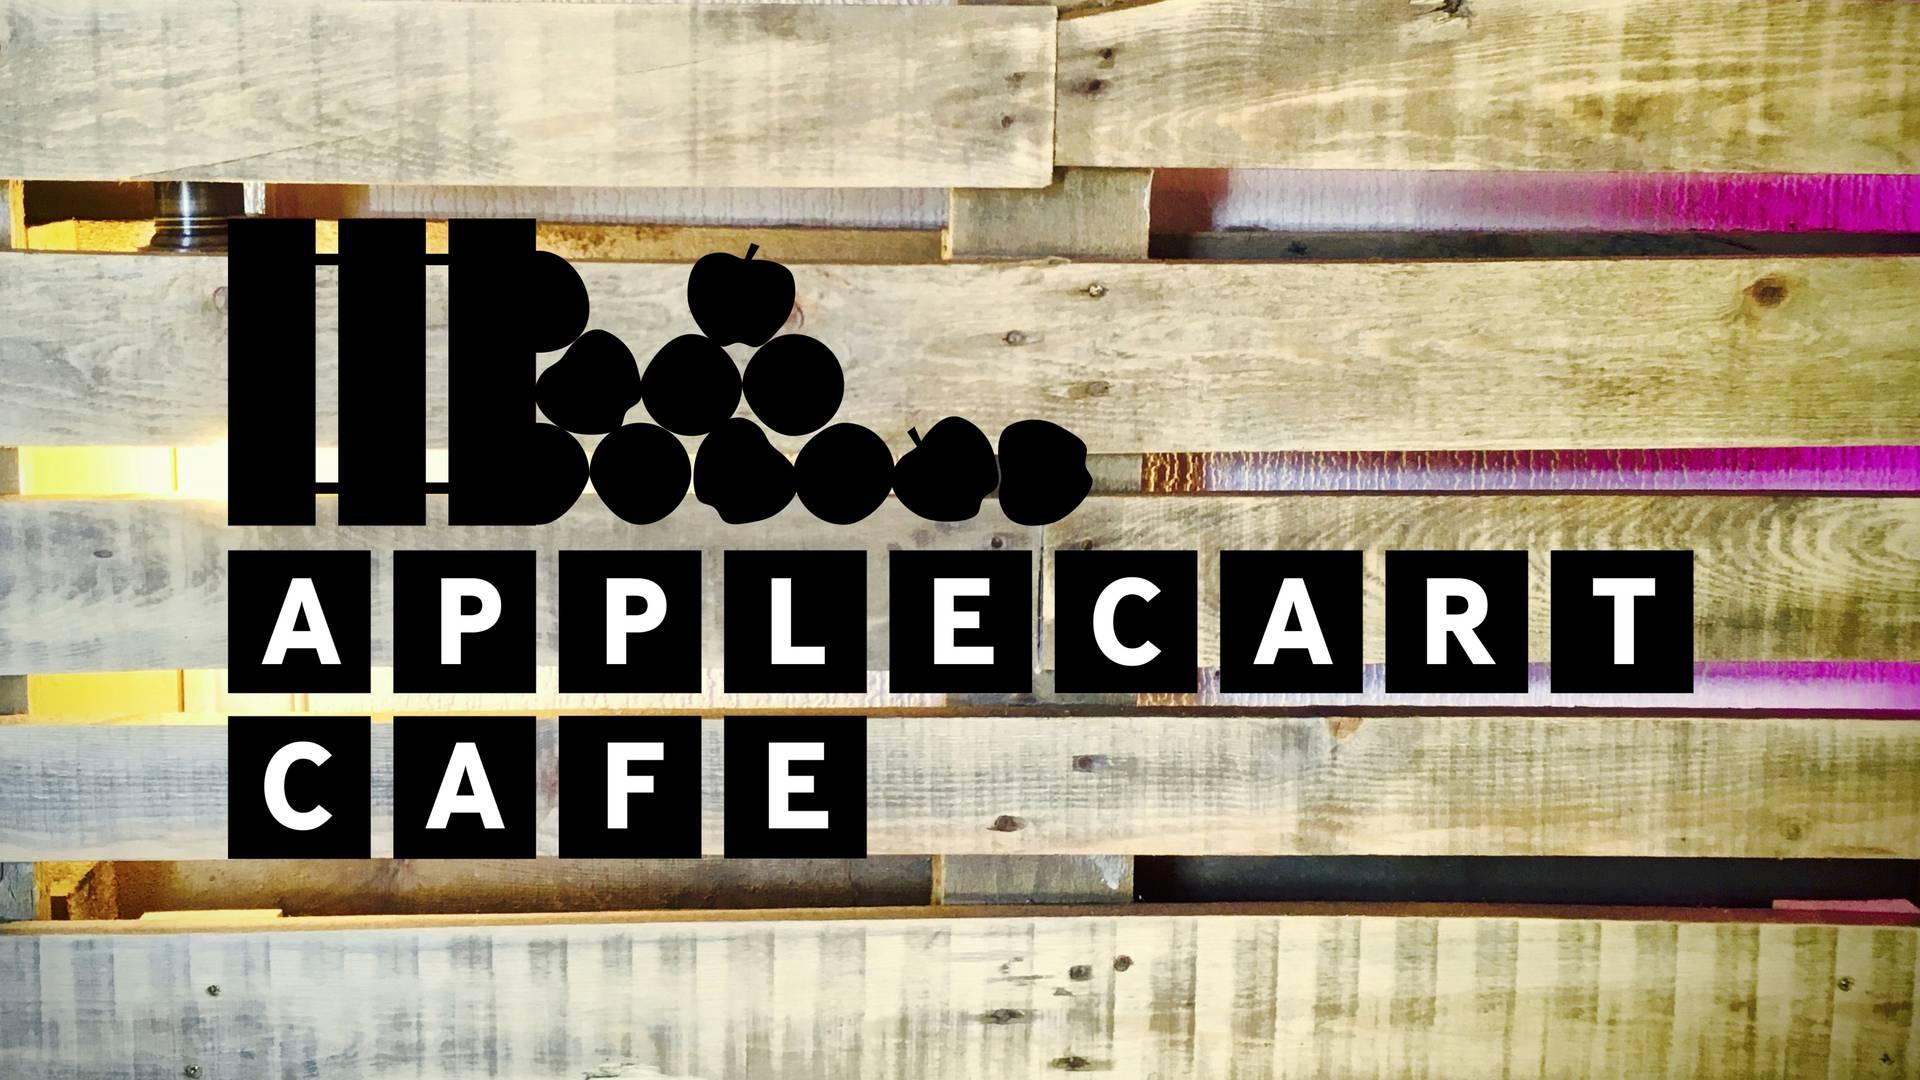 Applecart Cafe photo